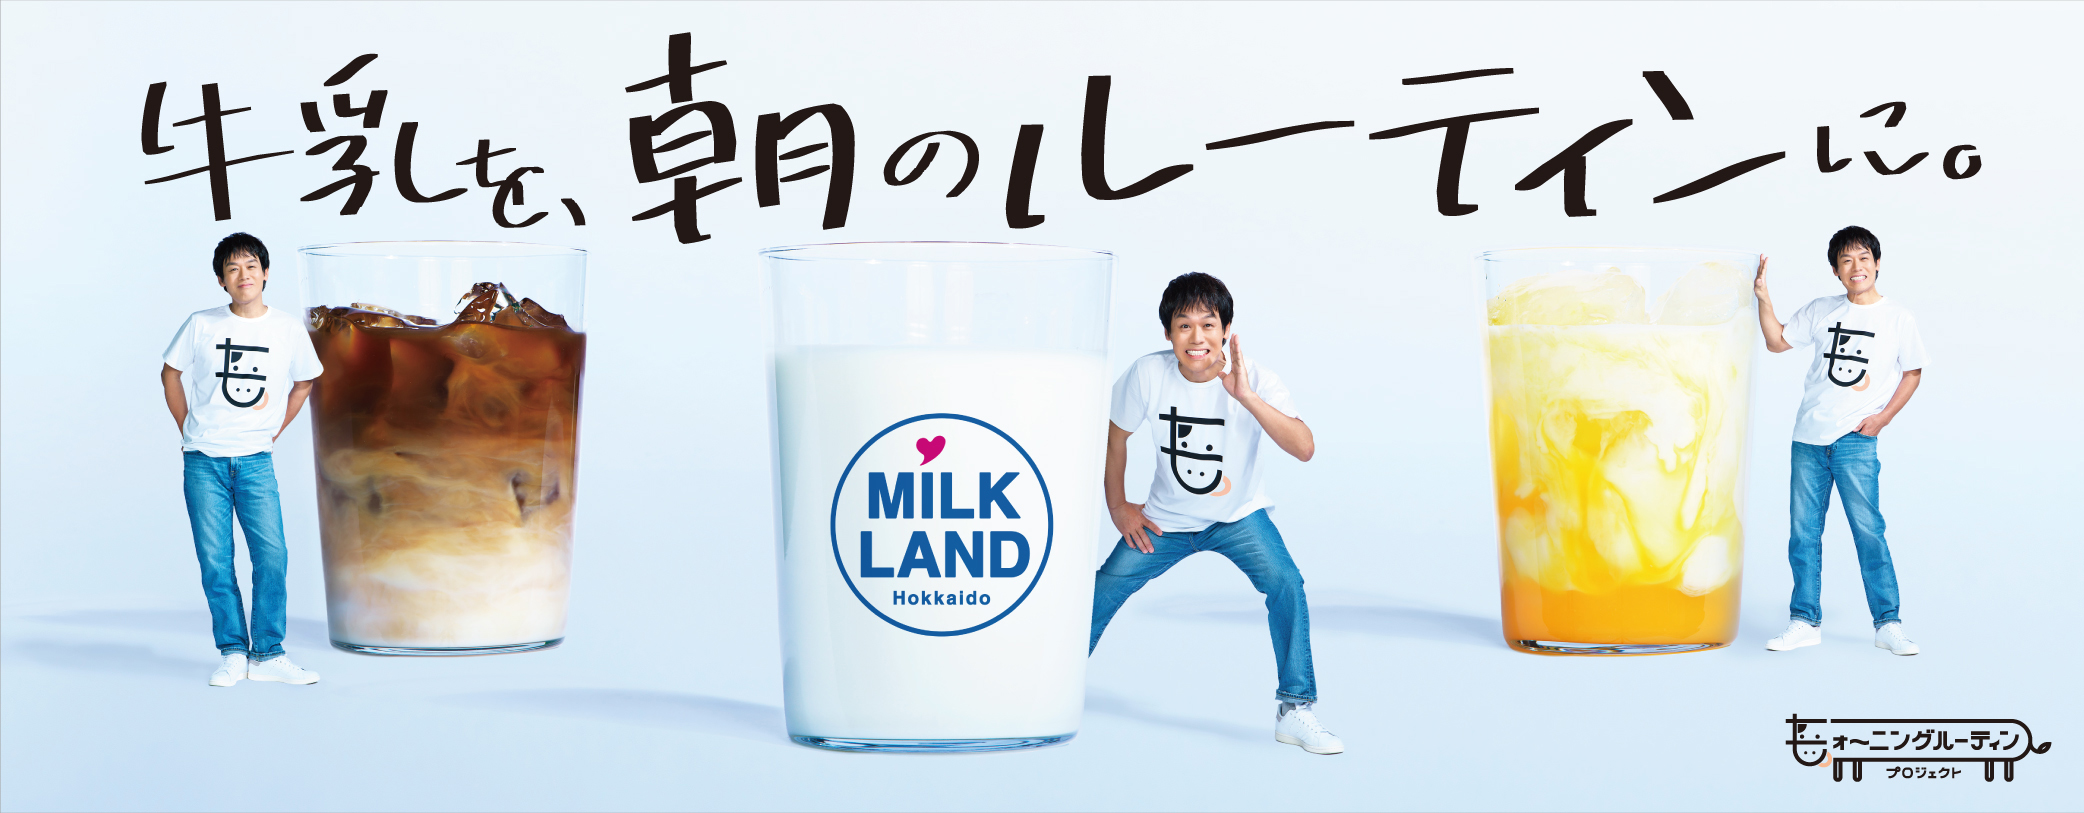 一日の元気を作る毎朝の習慣に、北海道の美味しい牛乳をオススメする「モォ～ニングルーティンプロジェクト」を開始しました。